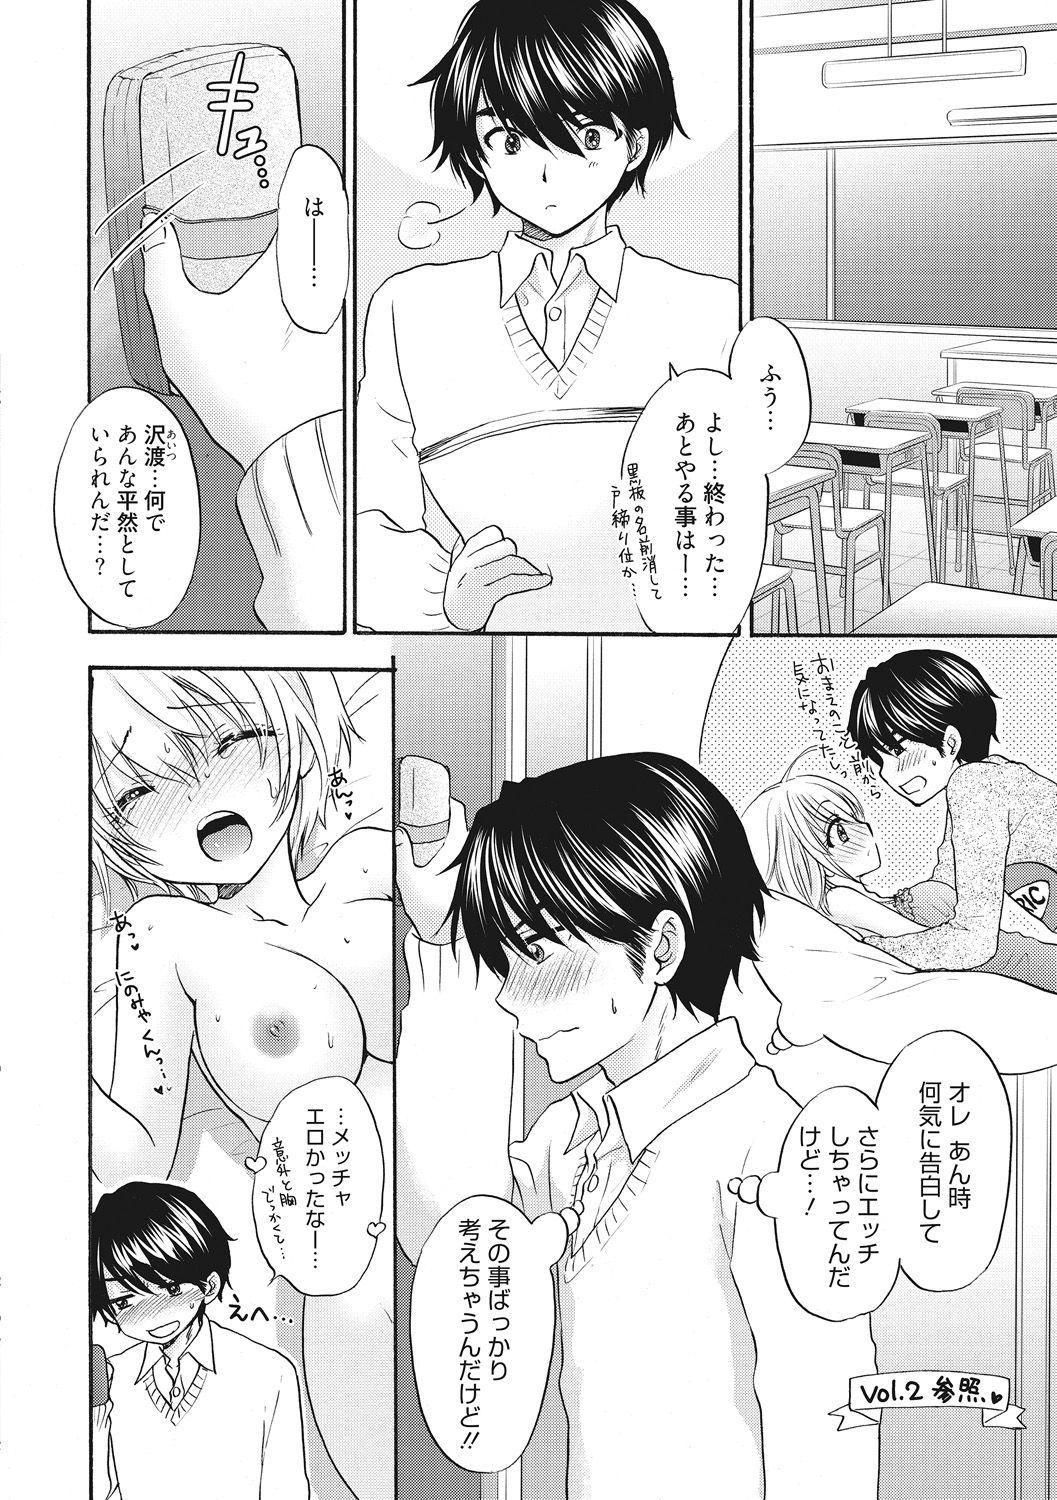 Casada Houkago Love Mode 13 Porn Sluts - Page 2